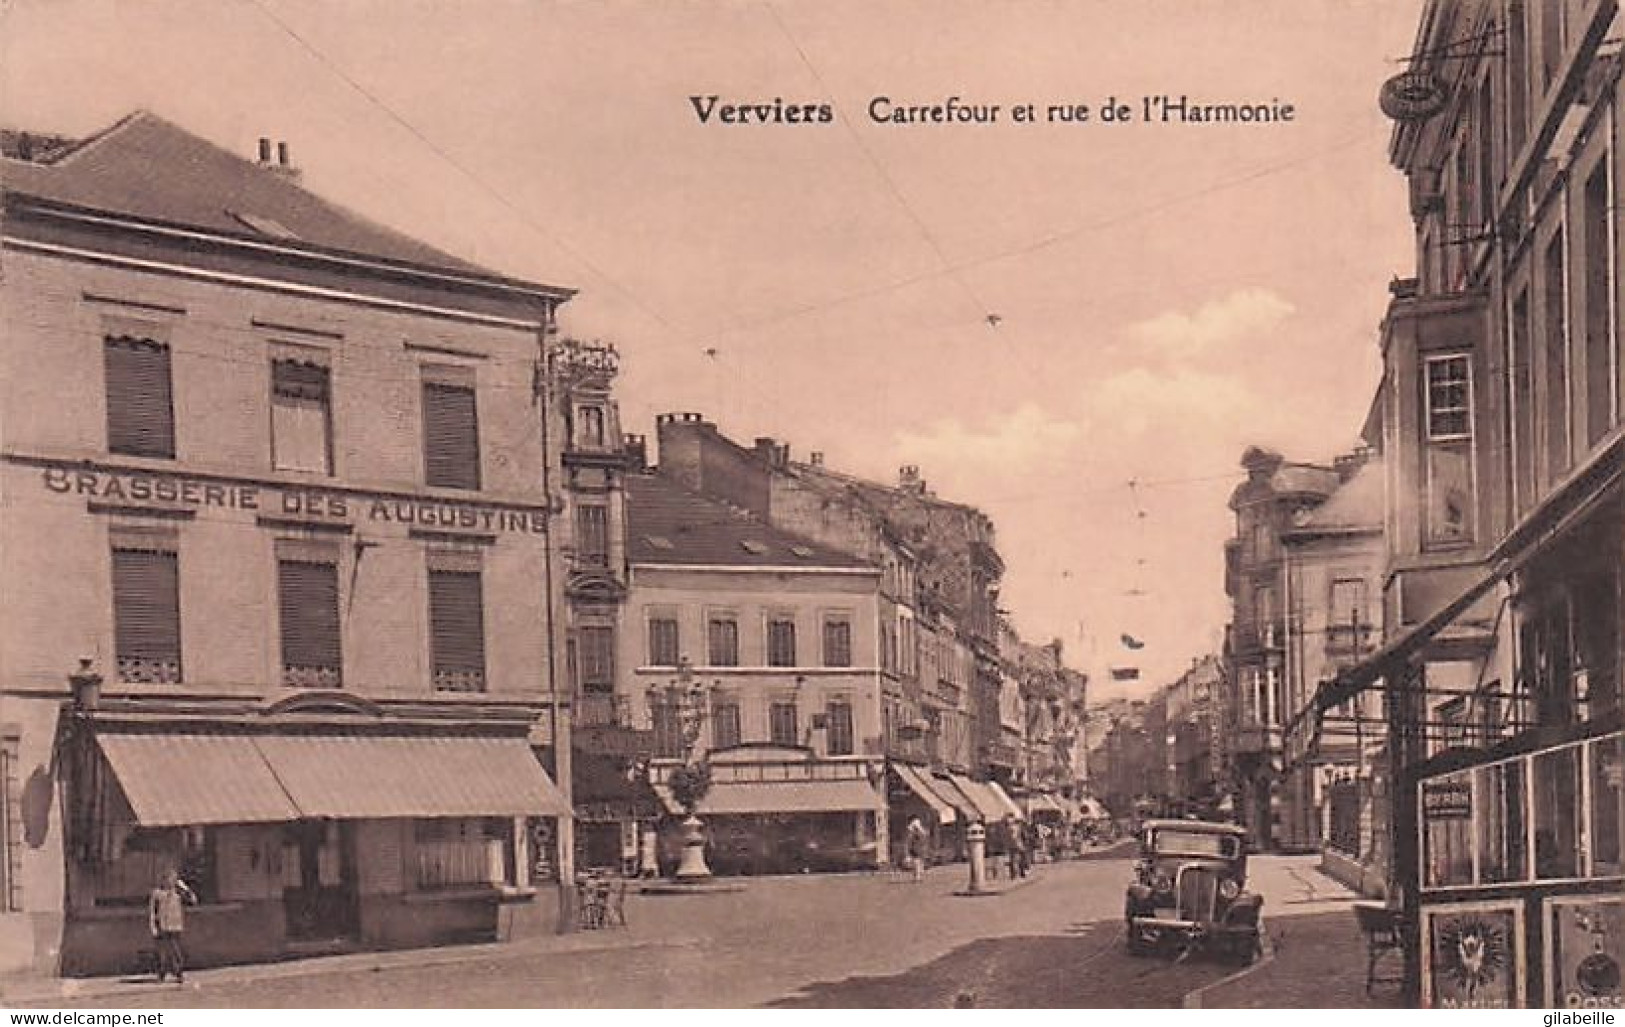 VERVIERS - Carrefour Et Rue De L'Harmonie - Brasserie Des Augustins - 1939 - Verviers